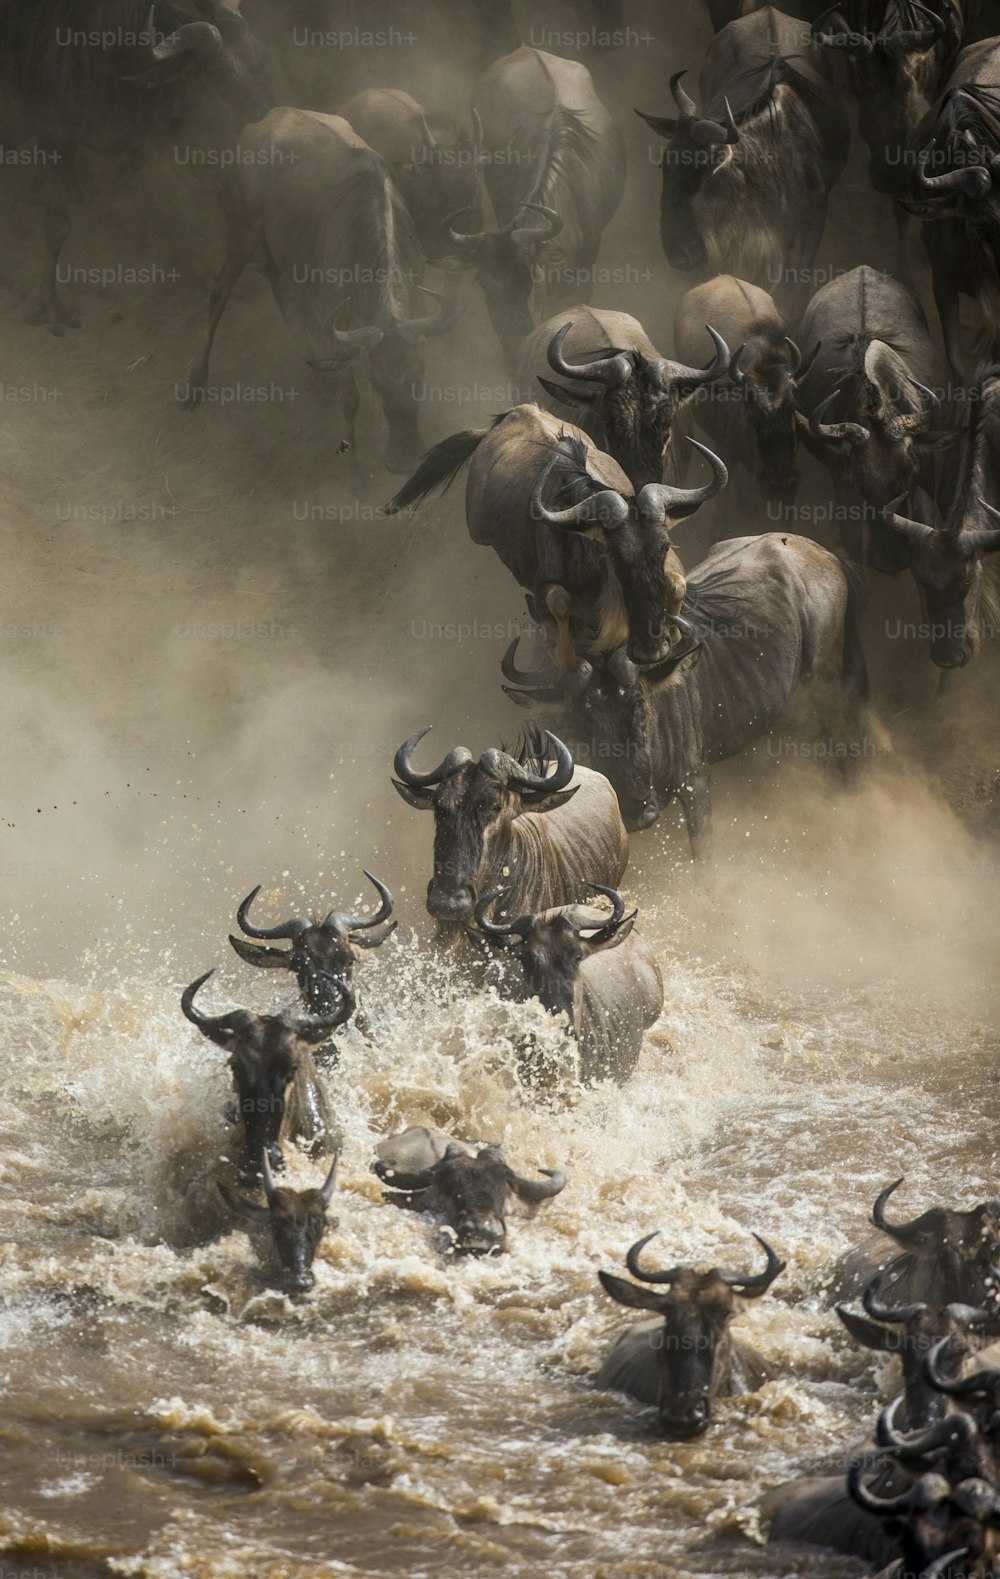 Des gnous sautent dans la rivière Mara. Grande migration. Kenya. Tanzanie. Parc national du Masaï Mara. Une excellente illustration.